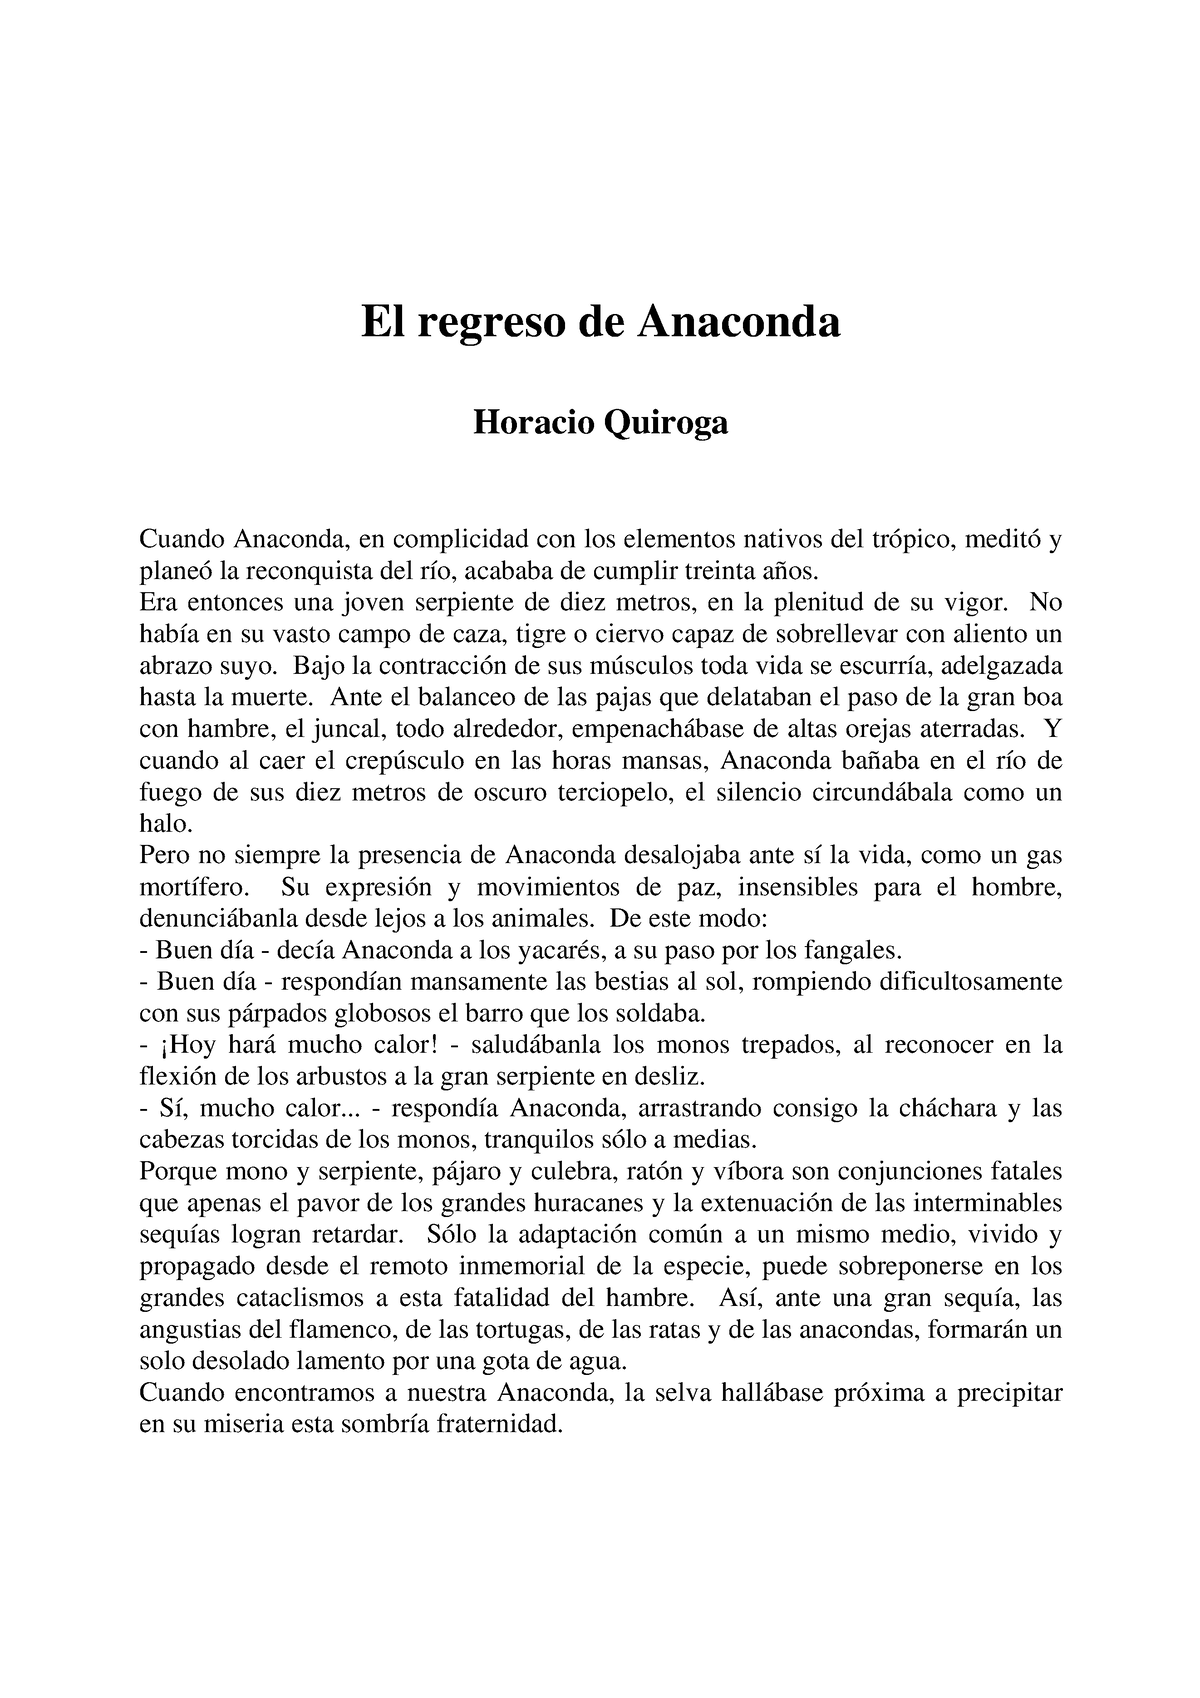 El Regreso De Anaconda Literatura El Regreso De Anaconda Horacio Quiroga Cuando Anaconda En 1684